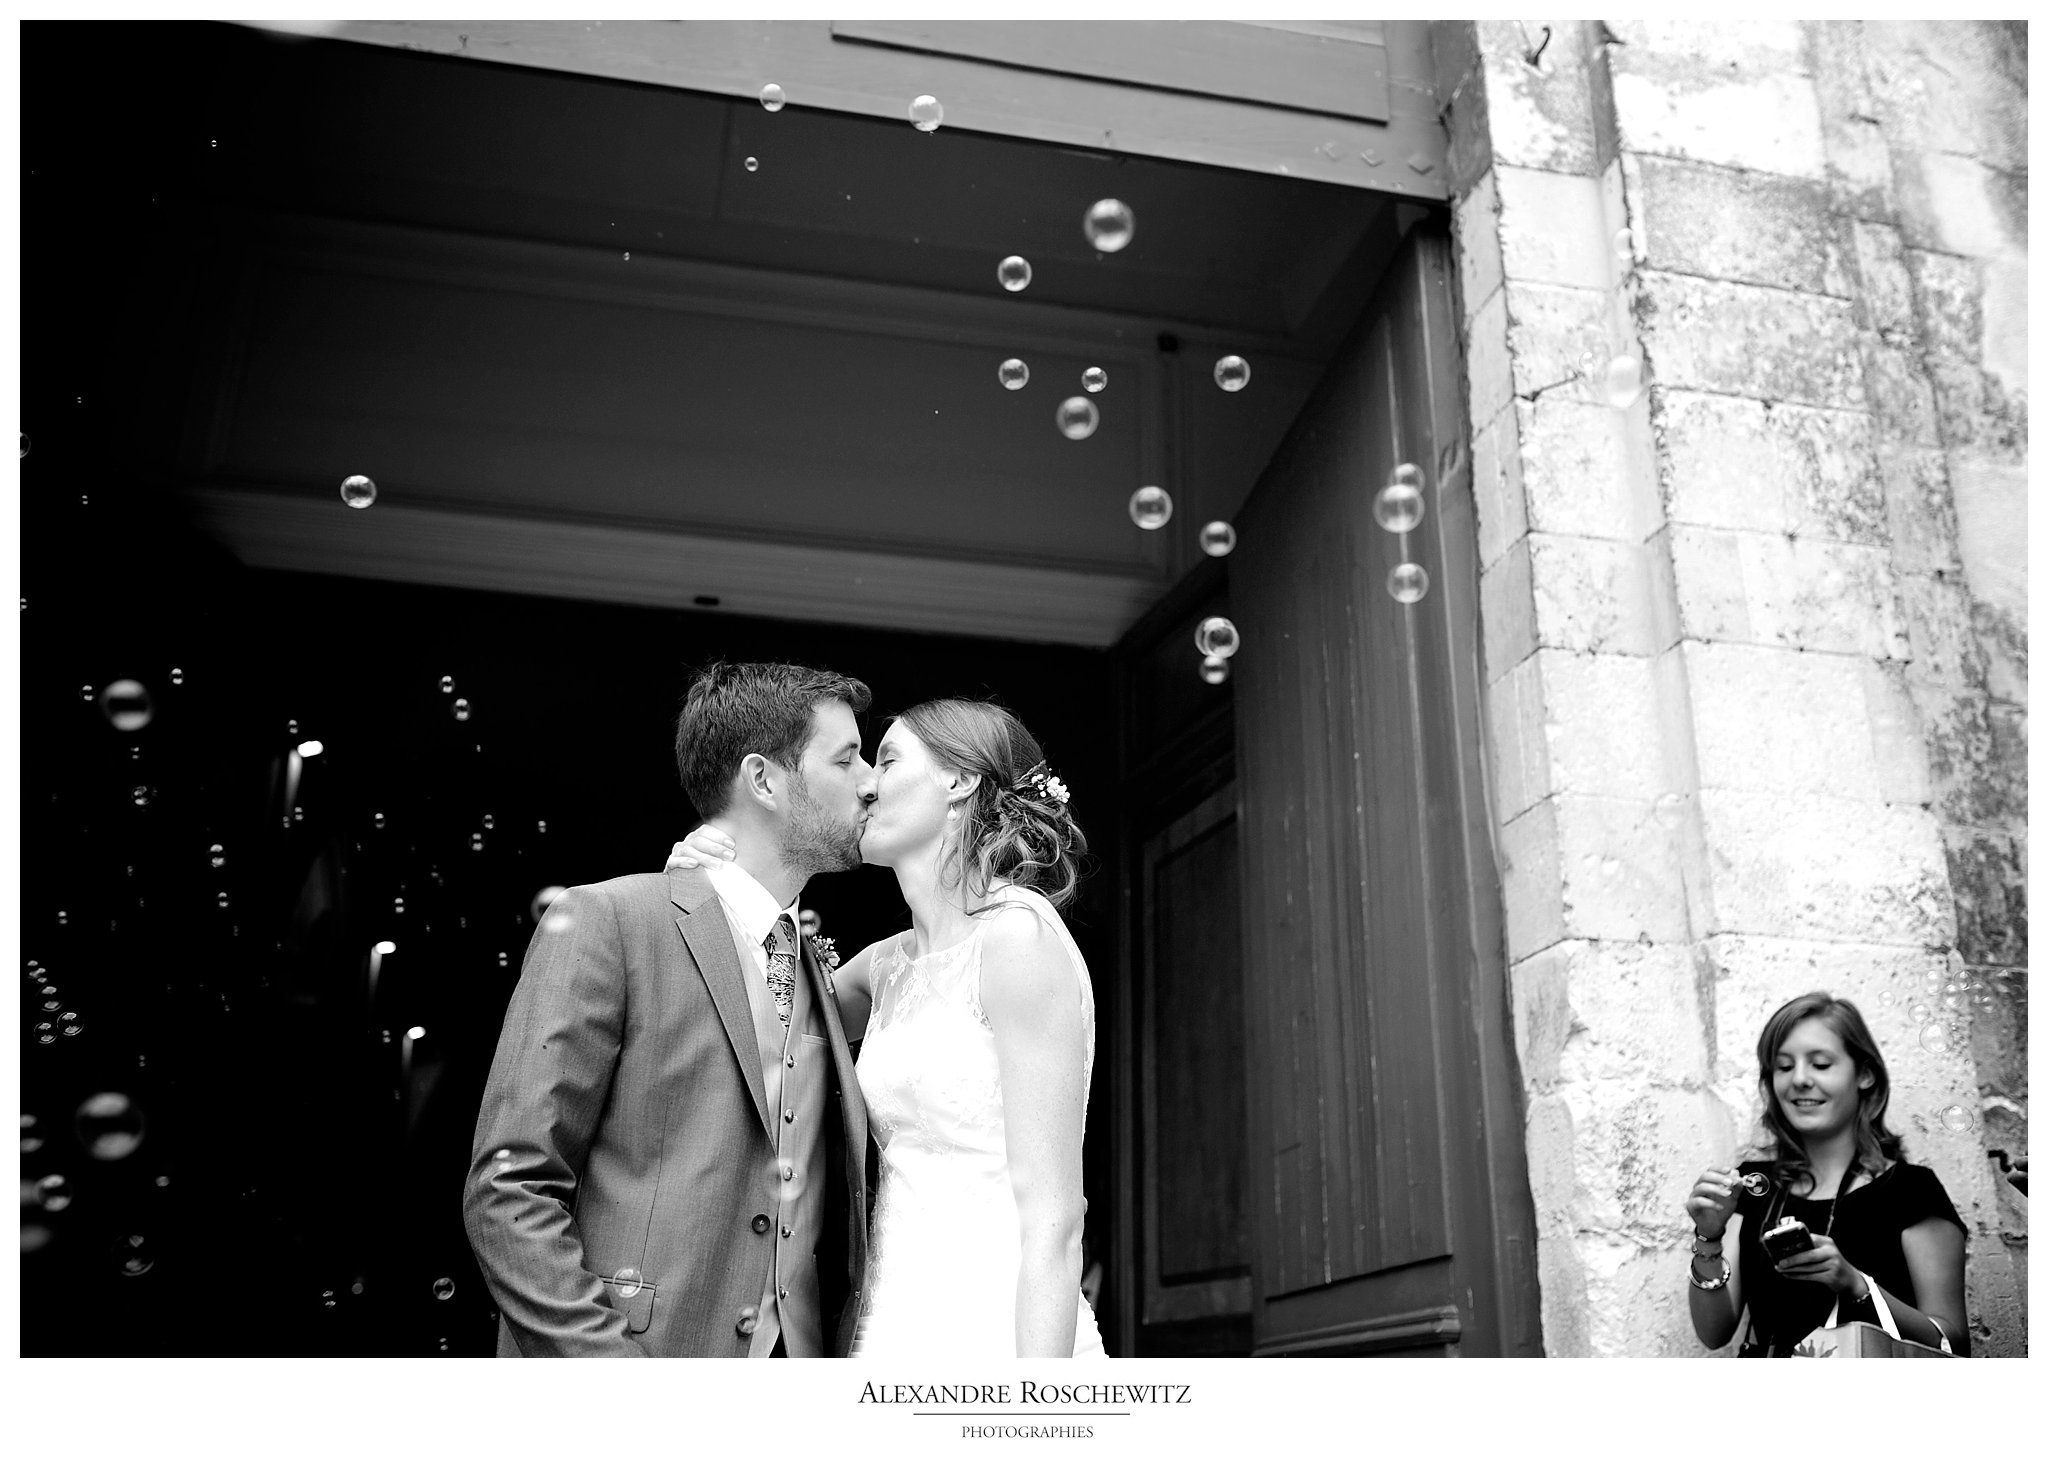 Photos de mariage à La Rochelle, avec Caroline et Charles en chefs de gare ! Cocktail et soirée à l'Abbaye de la Grâce Dieu. Alexandre Roschewitz Photographies.